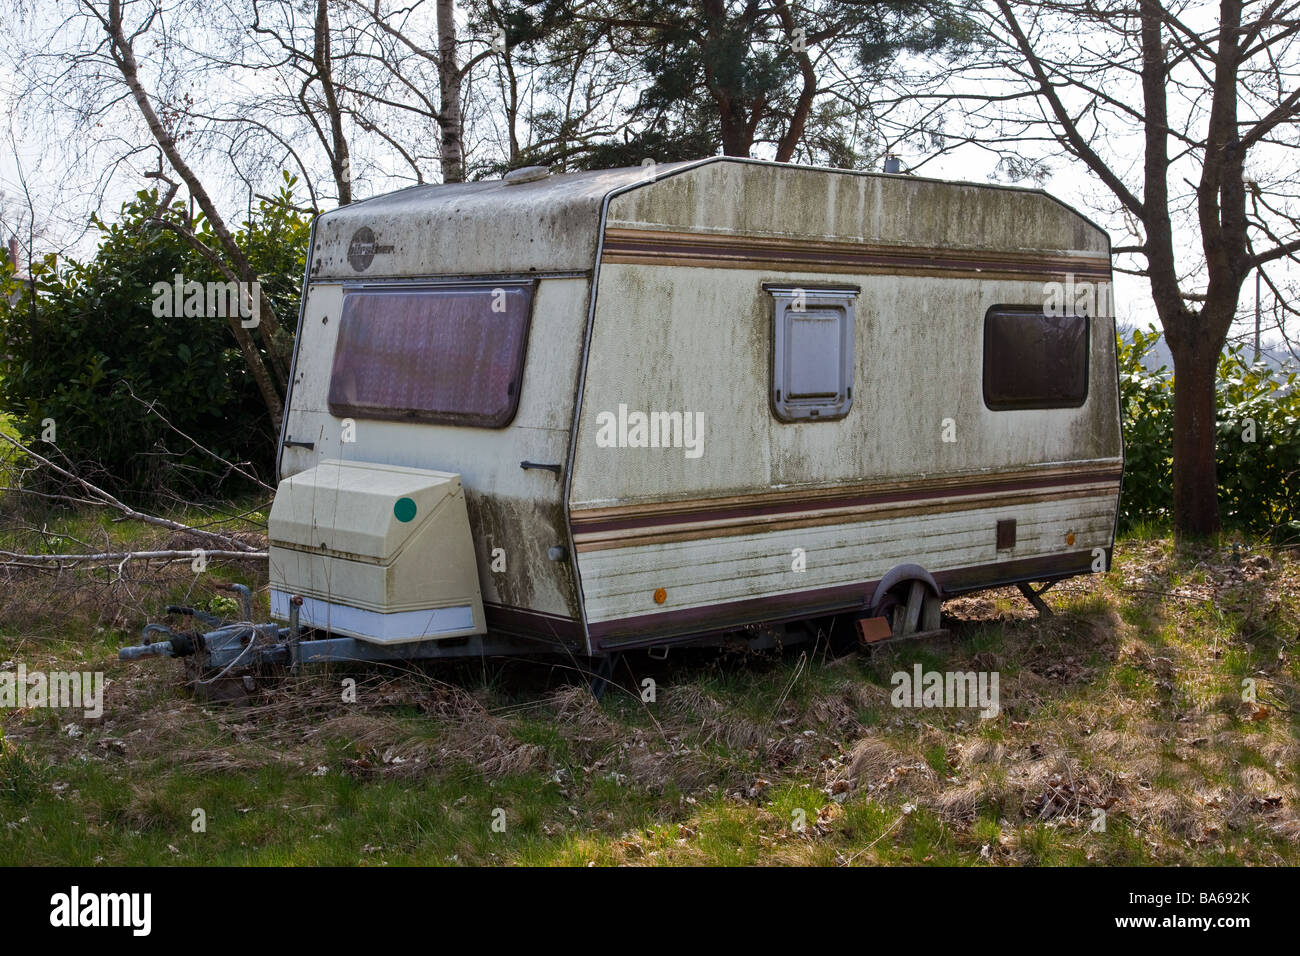 derelict-caravan-parked-in-field-BA692K.jpg